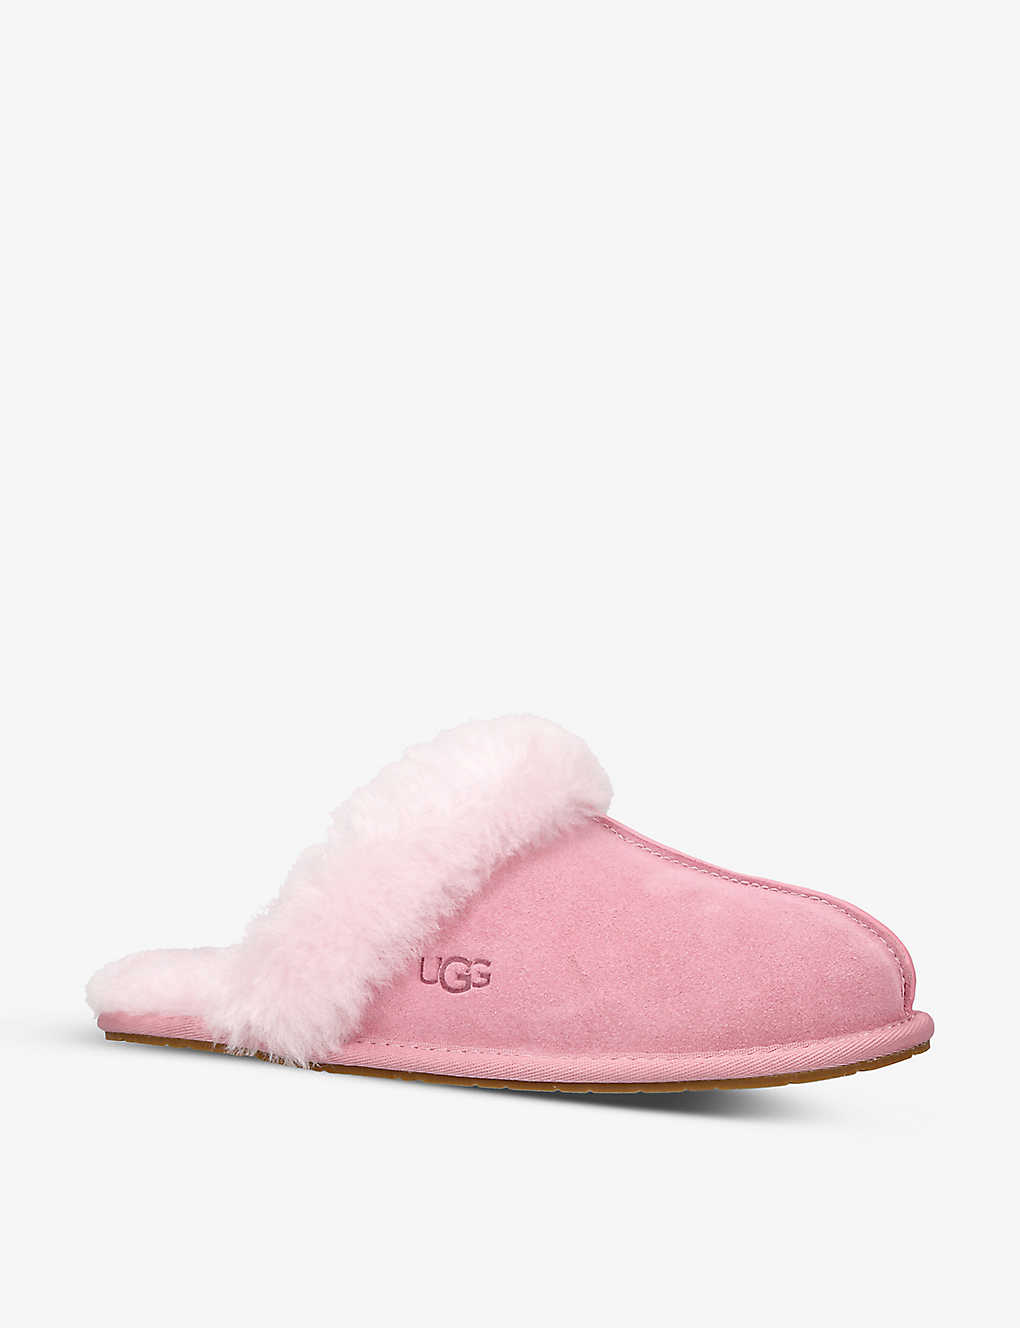 UGG Scuffette II sheepskin slippers